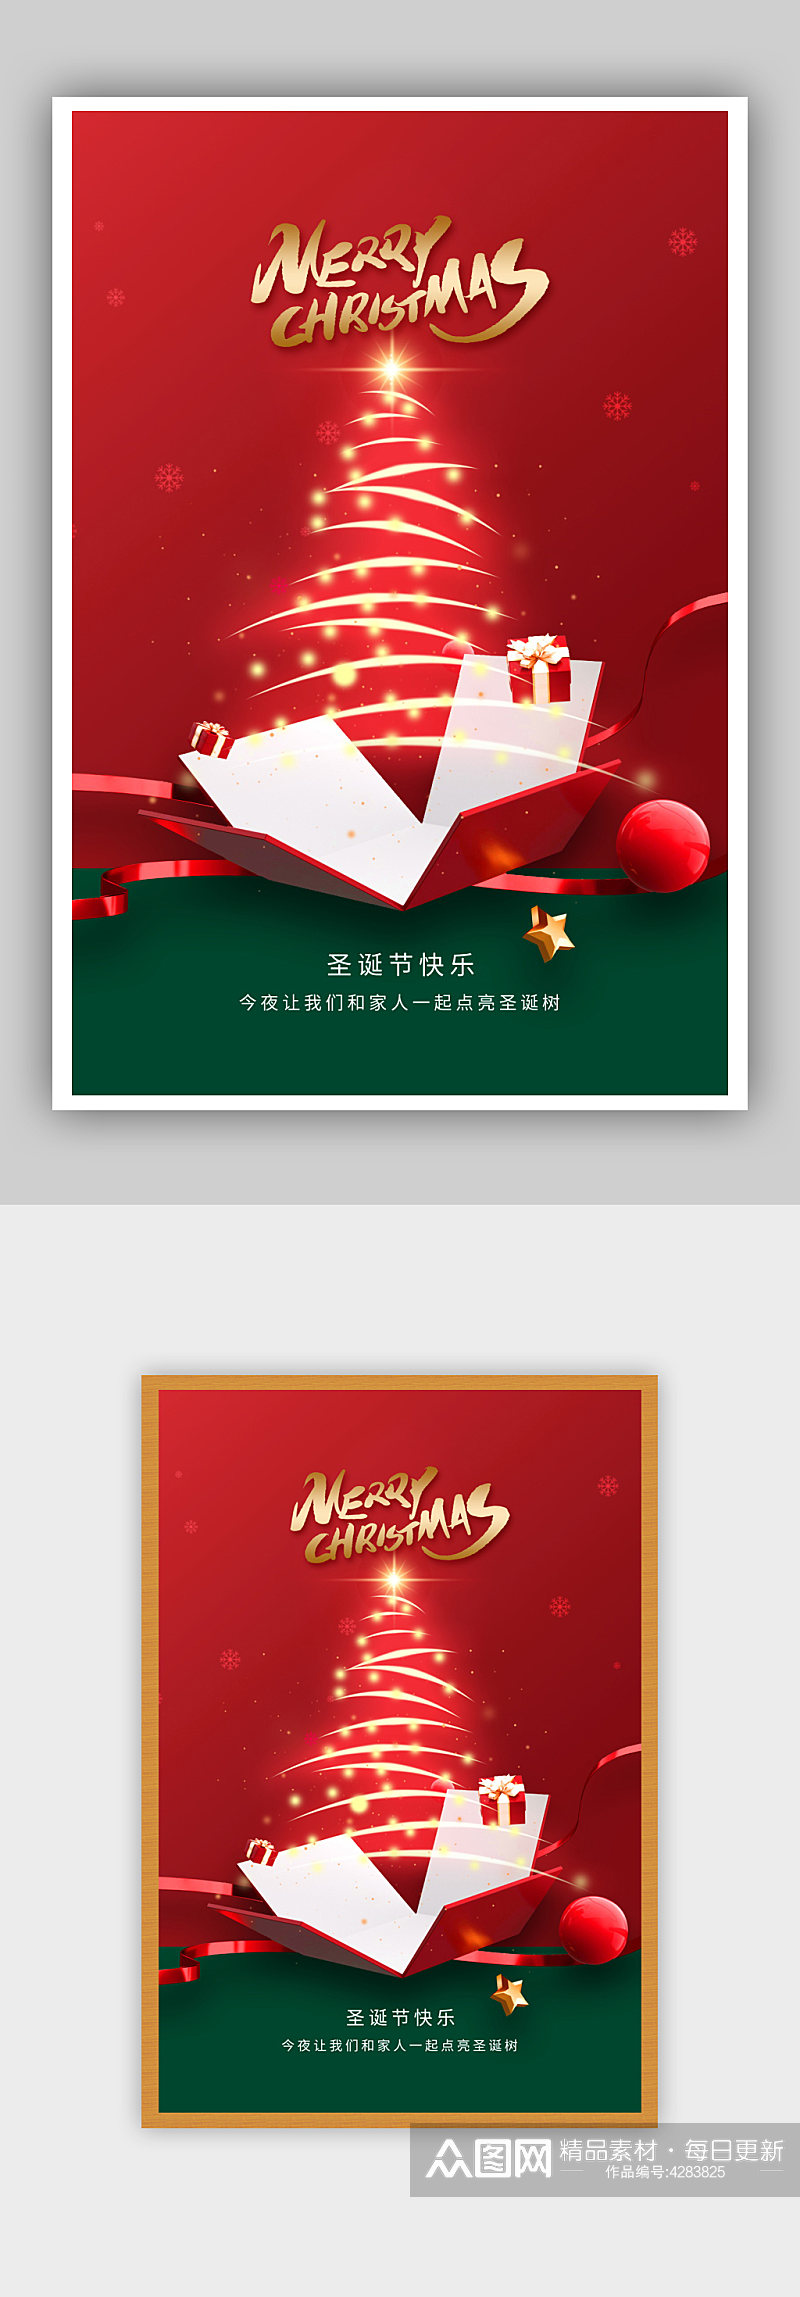 红色圣诞节宣传海报素材